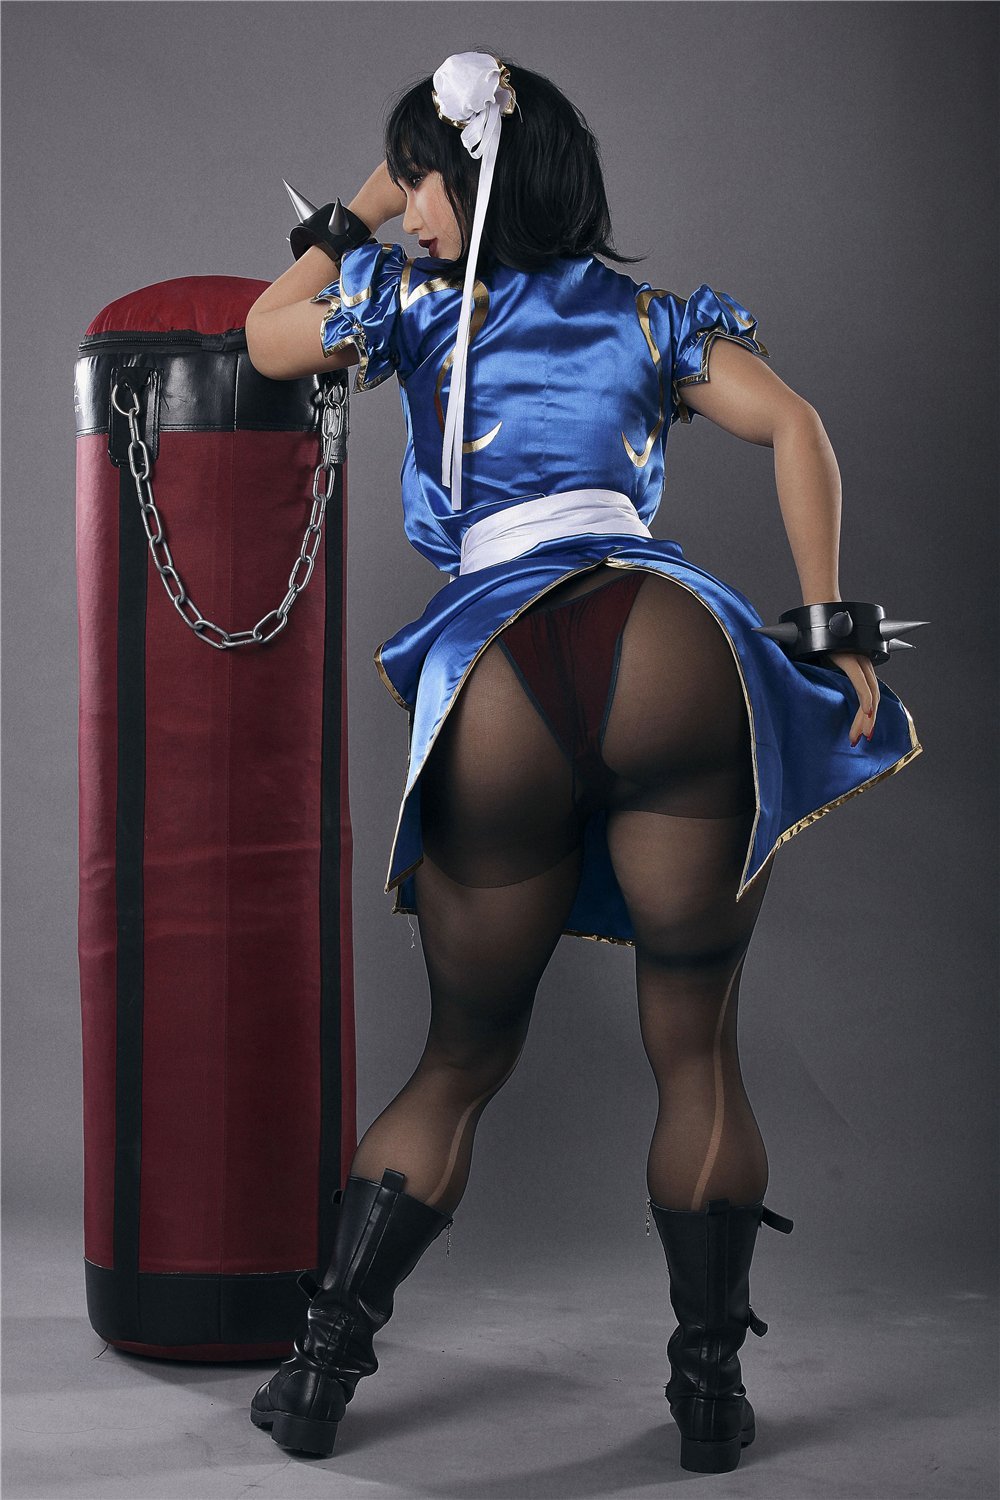 Irontechdoll Street Fighter Chun Li Sex Doll 158cm